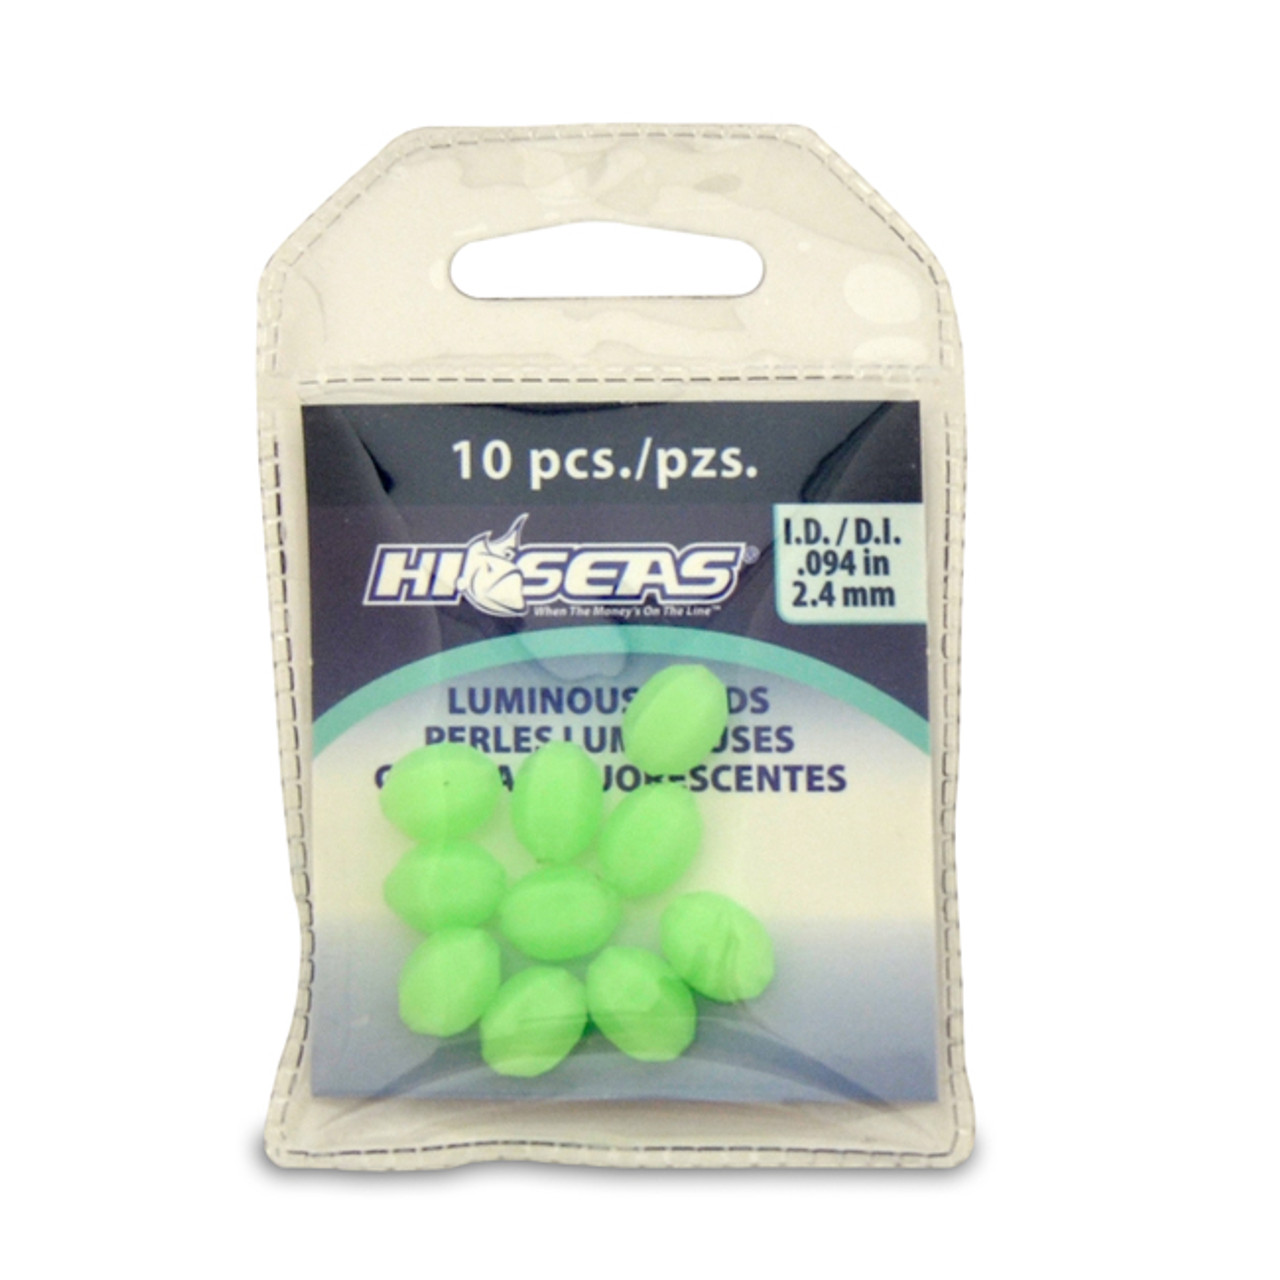 Hi-Seas Luminous Glow Beads Green (Small)